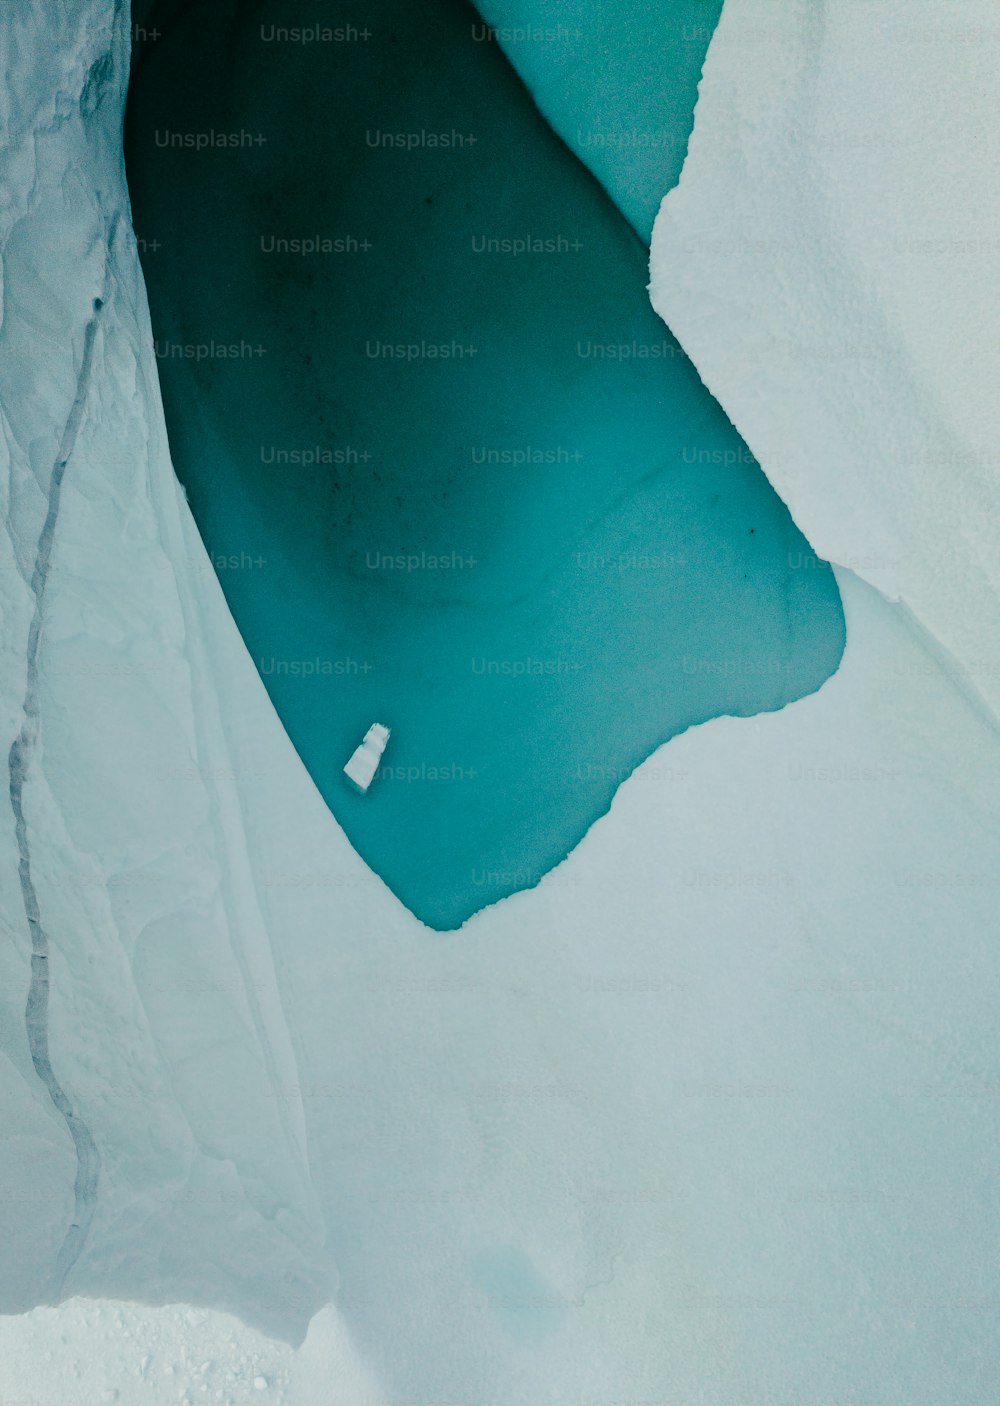 una veduta aerea di uno specchio d'acqua circondato dalla neve